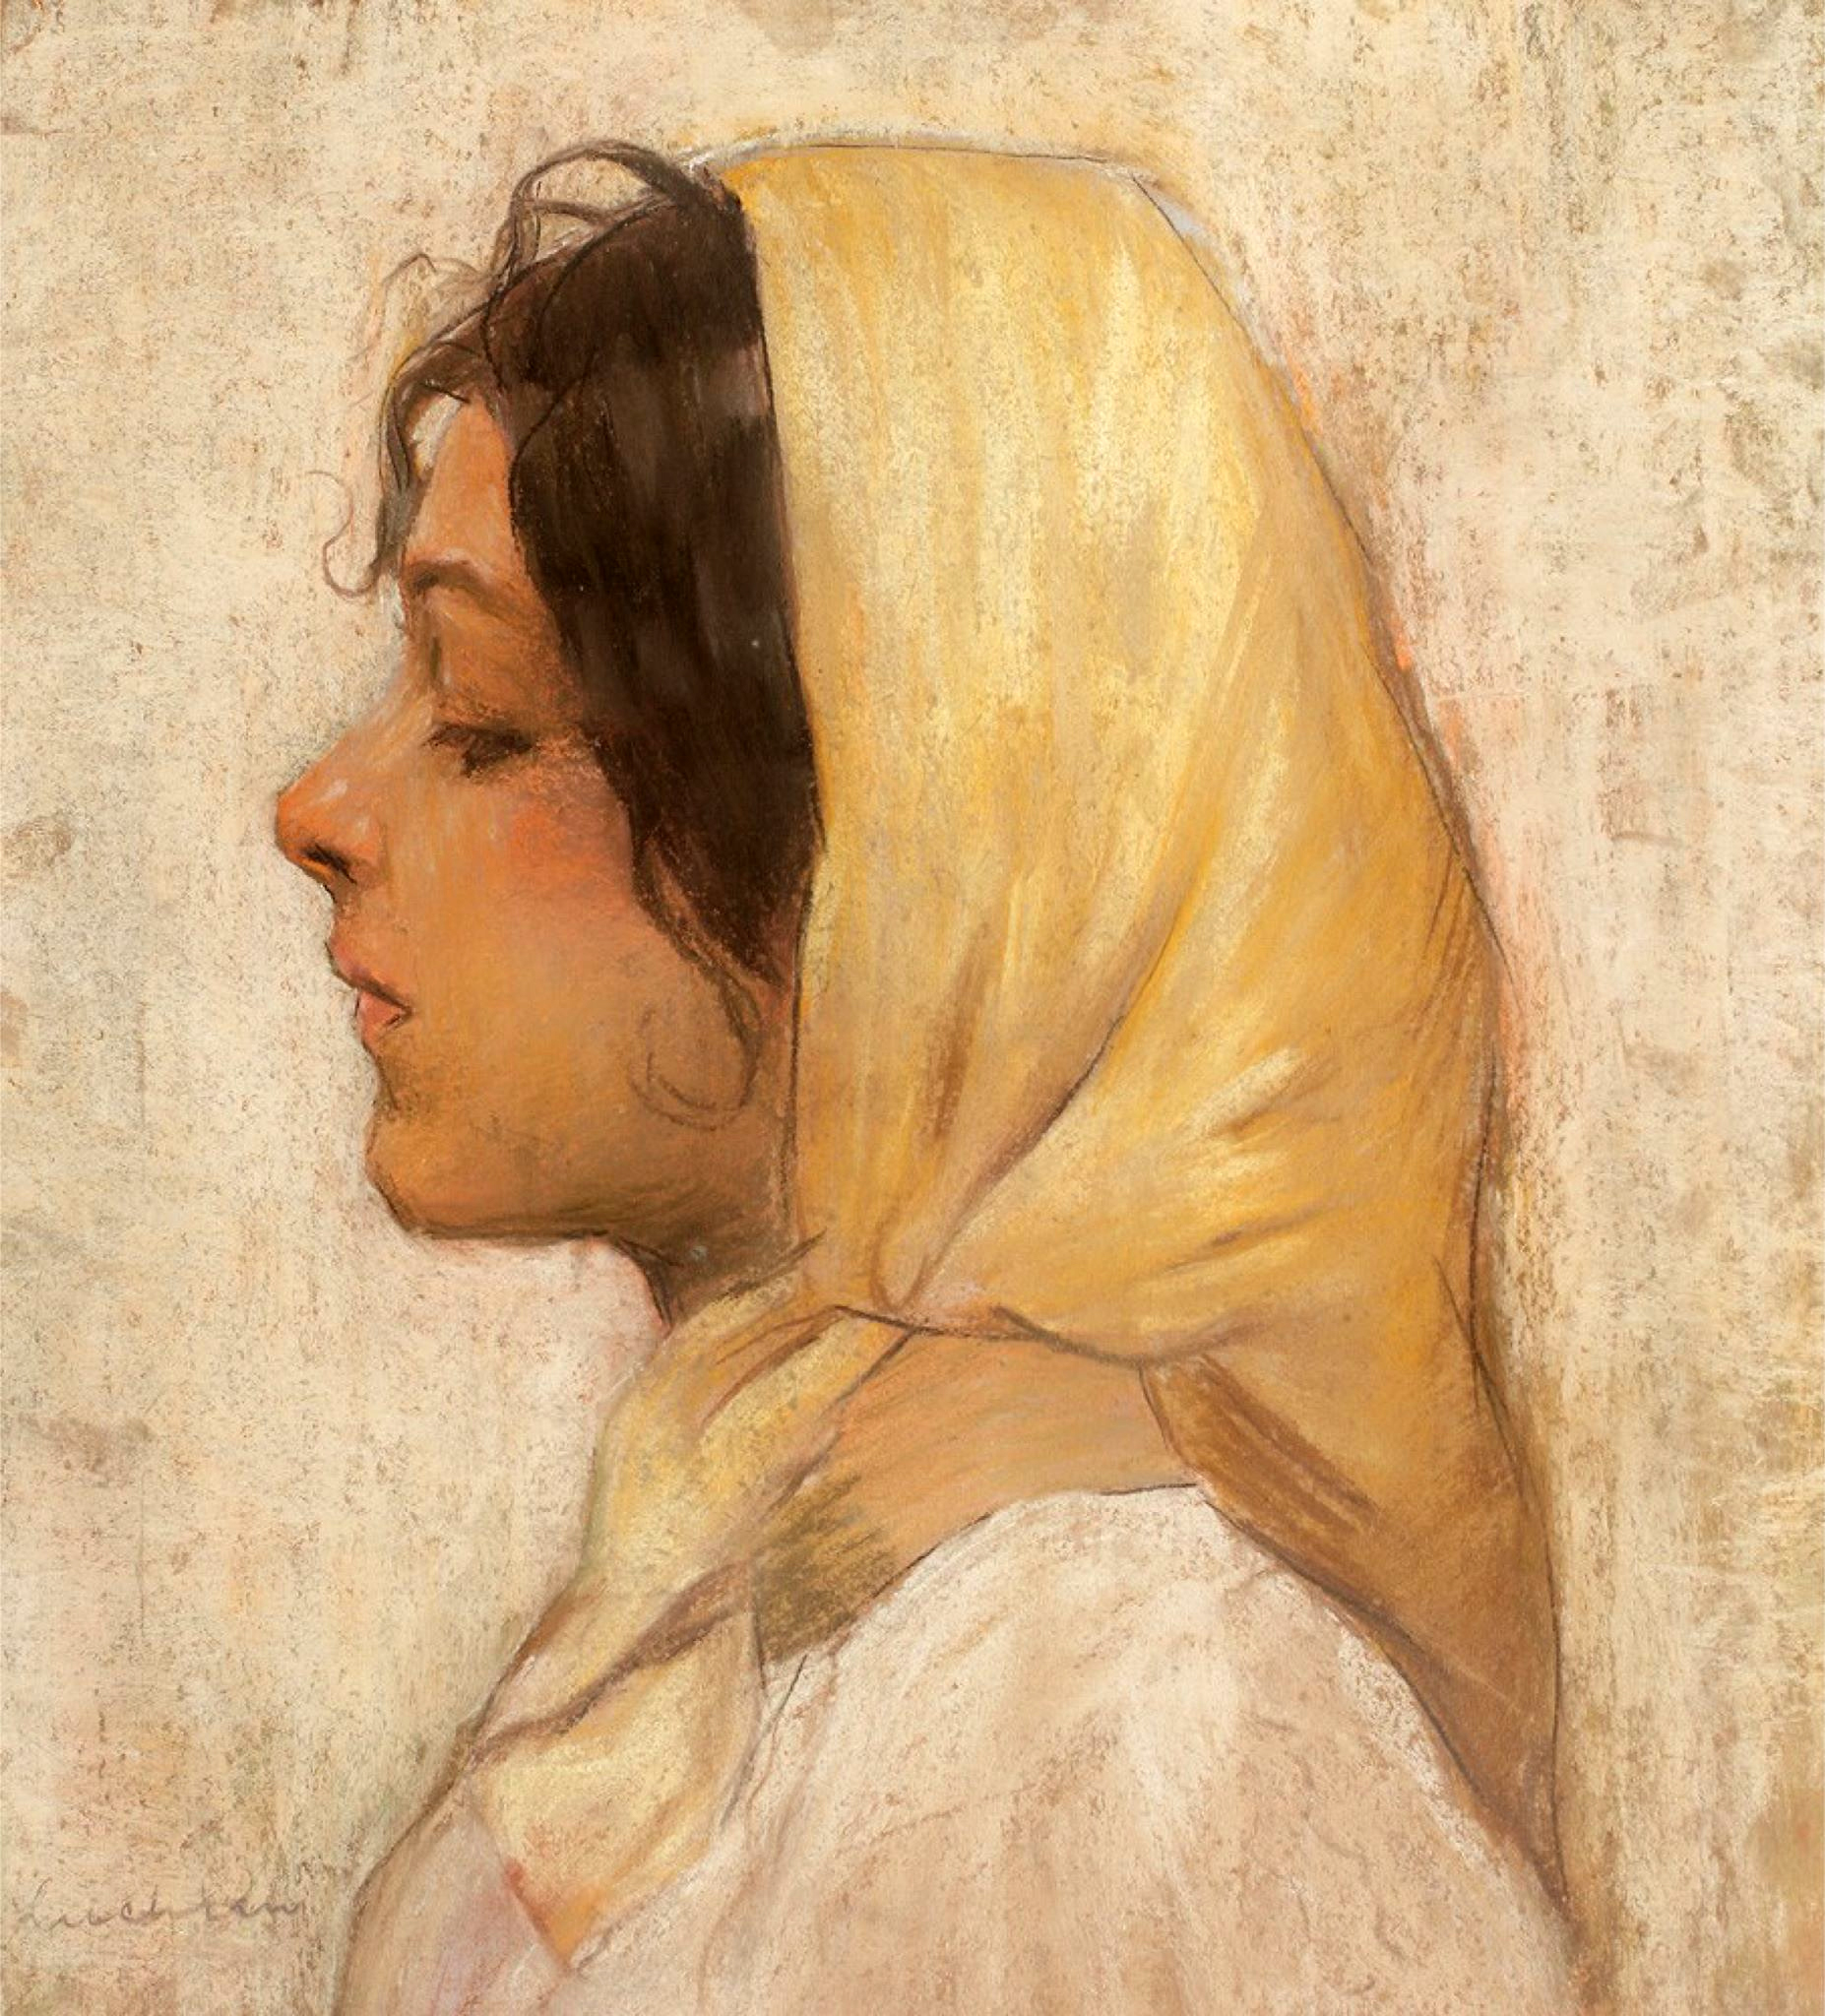 스테판 루키안(Stefan Luchian), 루마니아, 화가, 1868-1916